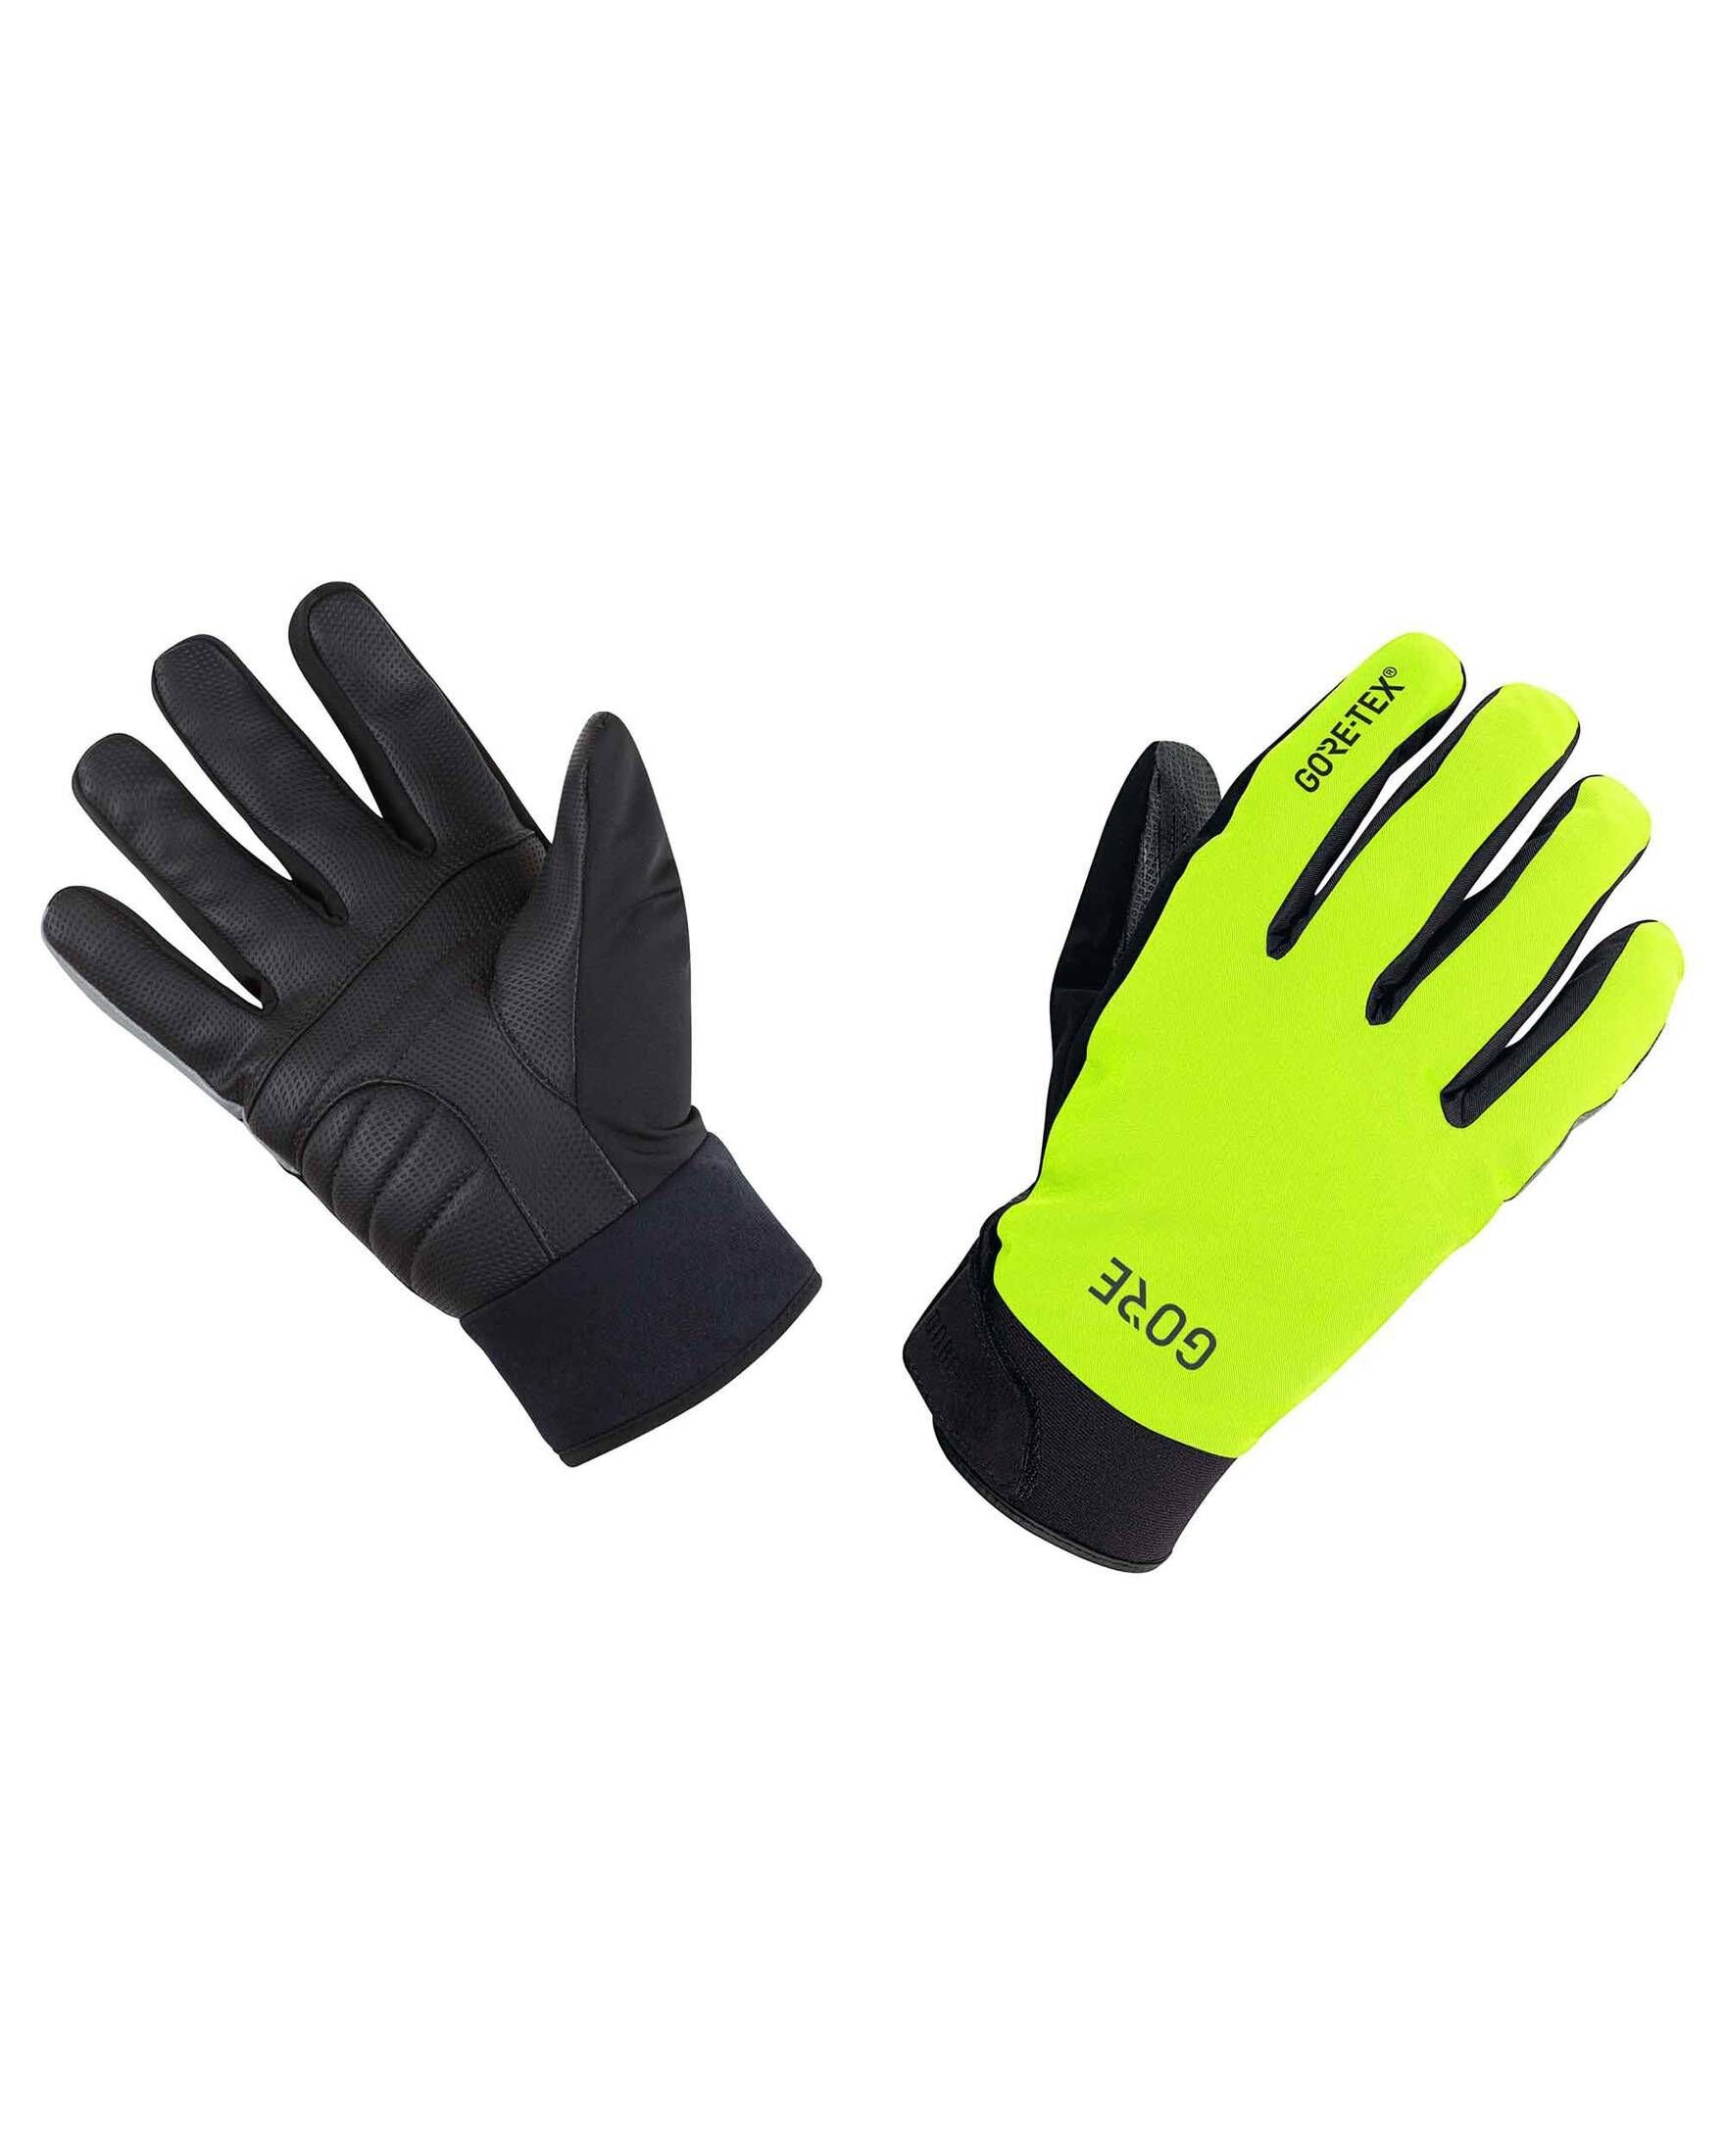 schwarz/gelb Wear C5 Fahrradhandschuhe Herren (703) Thermo GLOVES GORE-TEX Handschuhe GORE®